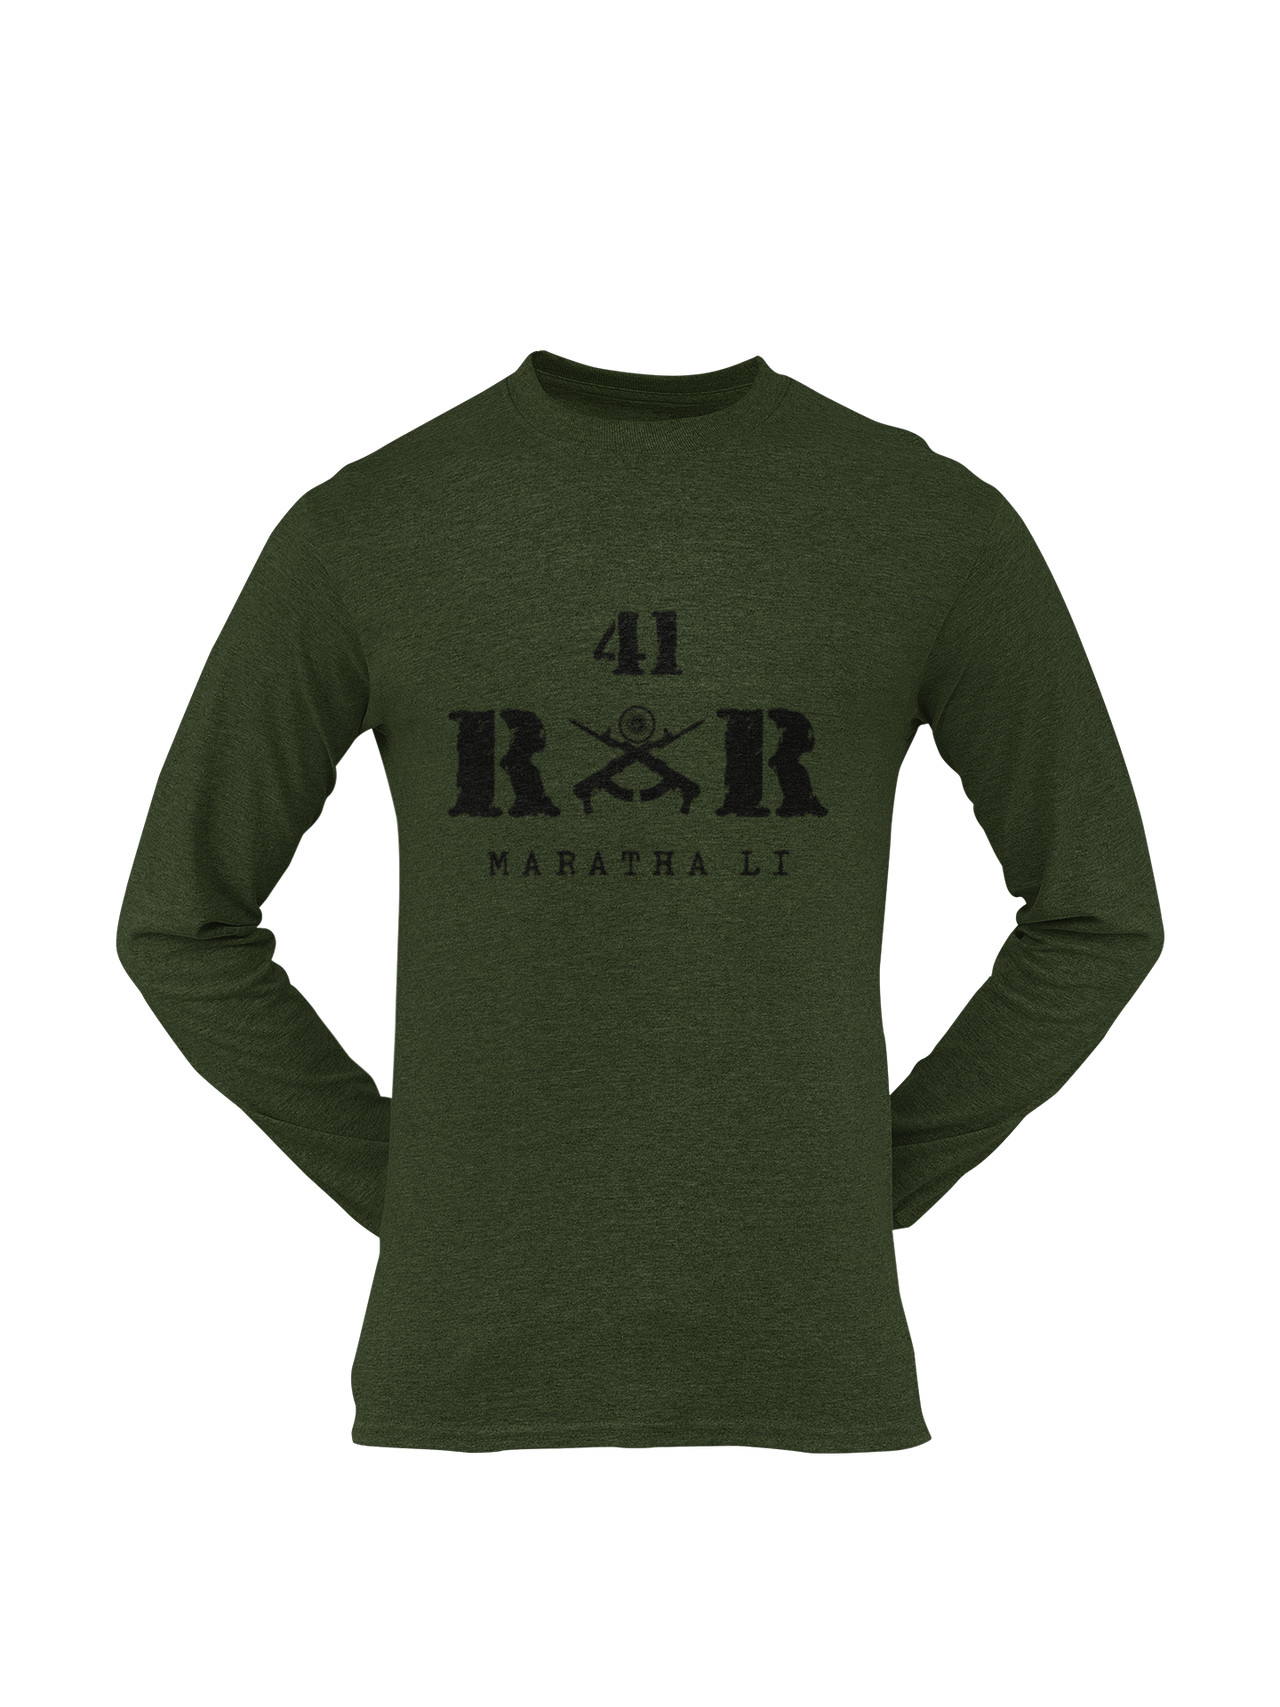 Rashtriya Rifles T-shirt - 41 RR Maratha Li (Men)